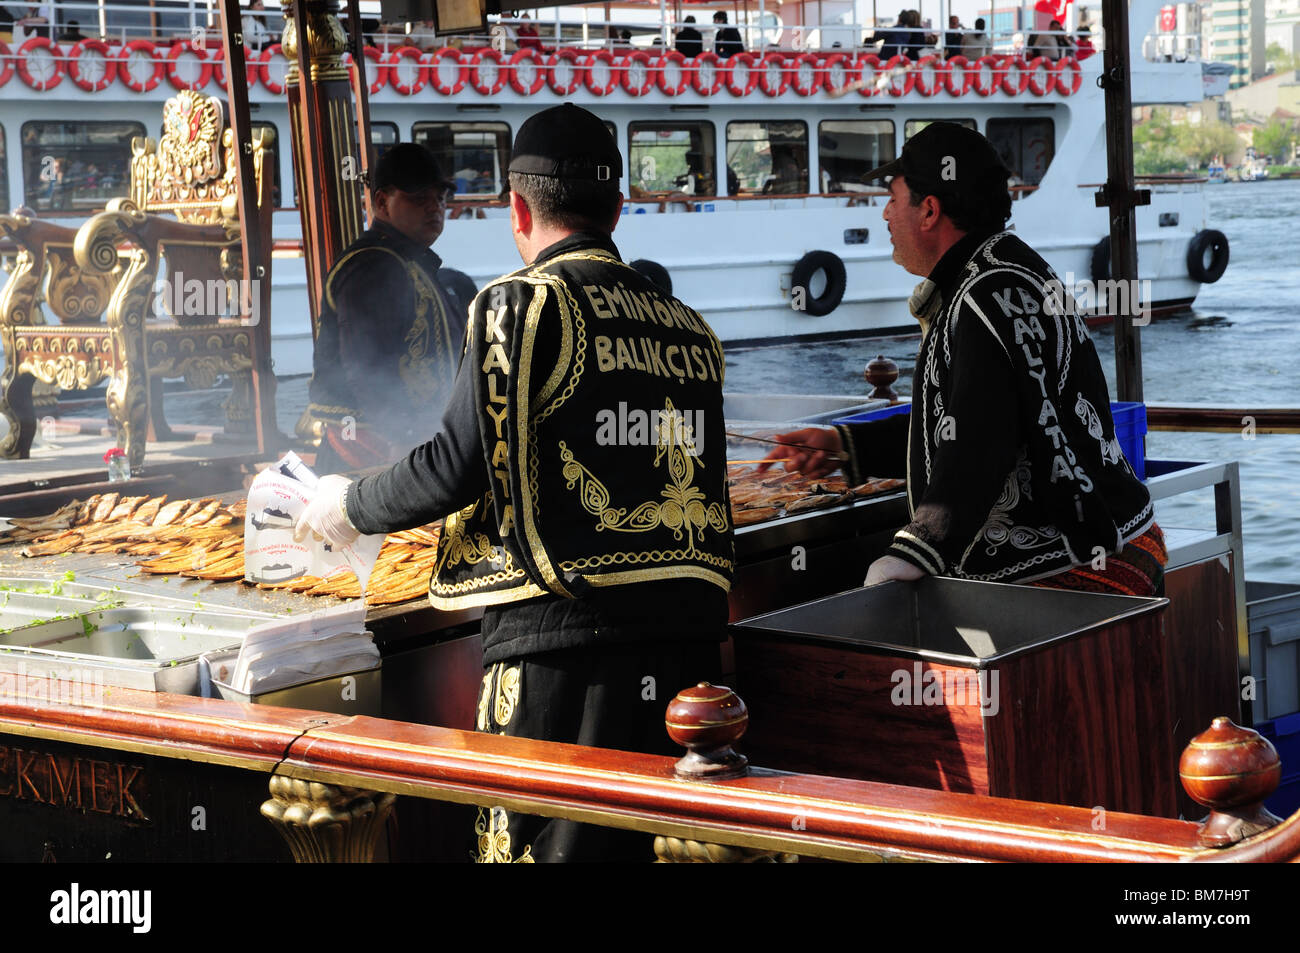 Preparare il pesce alla griglia di panini o Balik Ekmek su oro dipinto Barche Isola Eminonu Istanbul Asia Minore Foto Stock